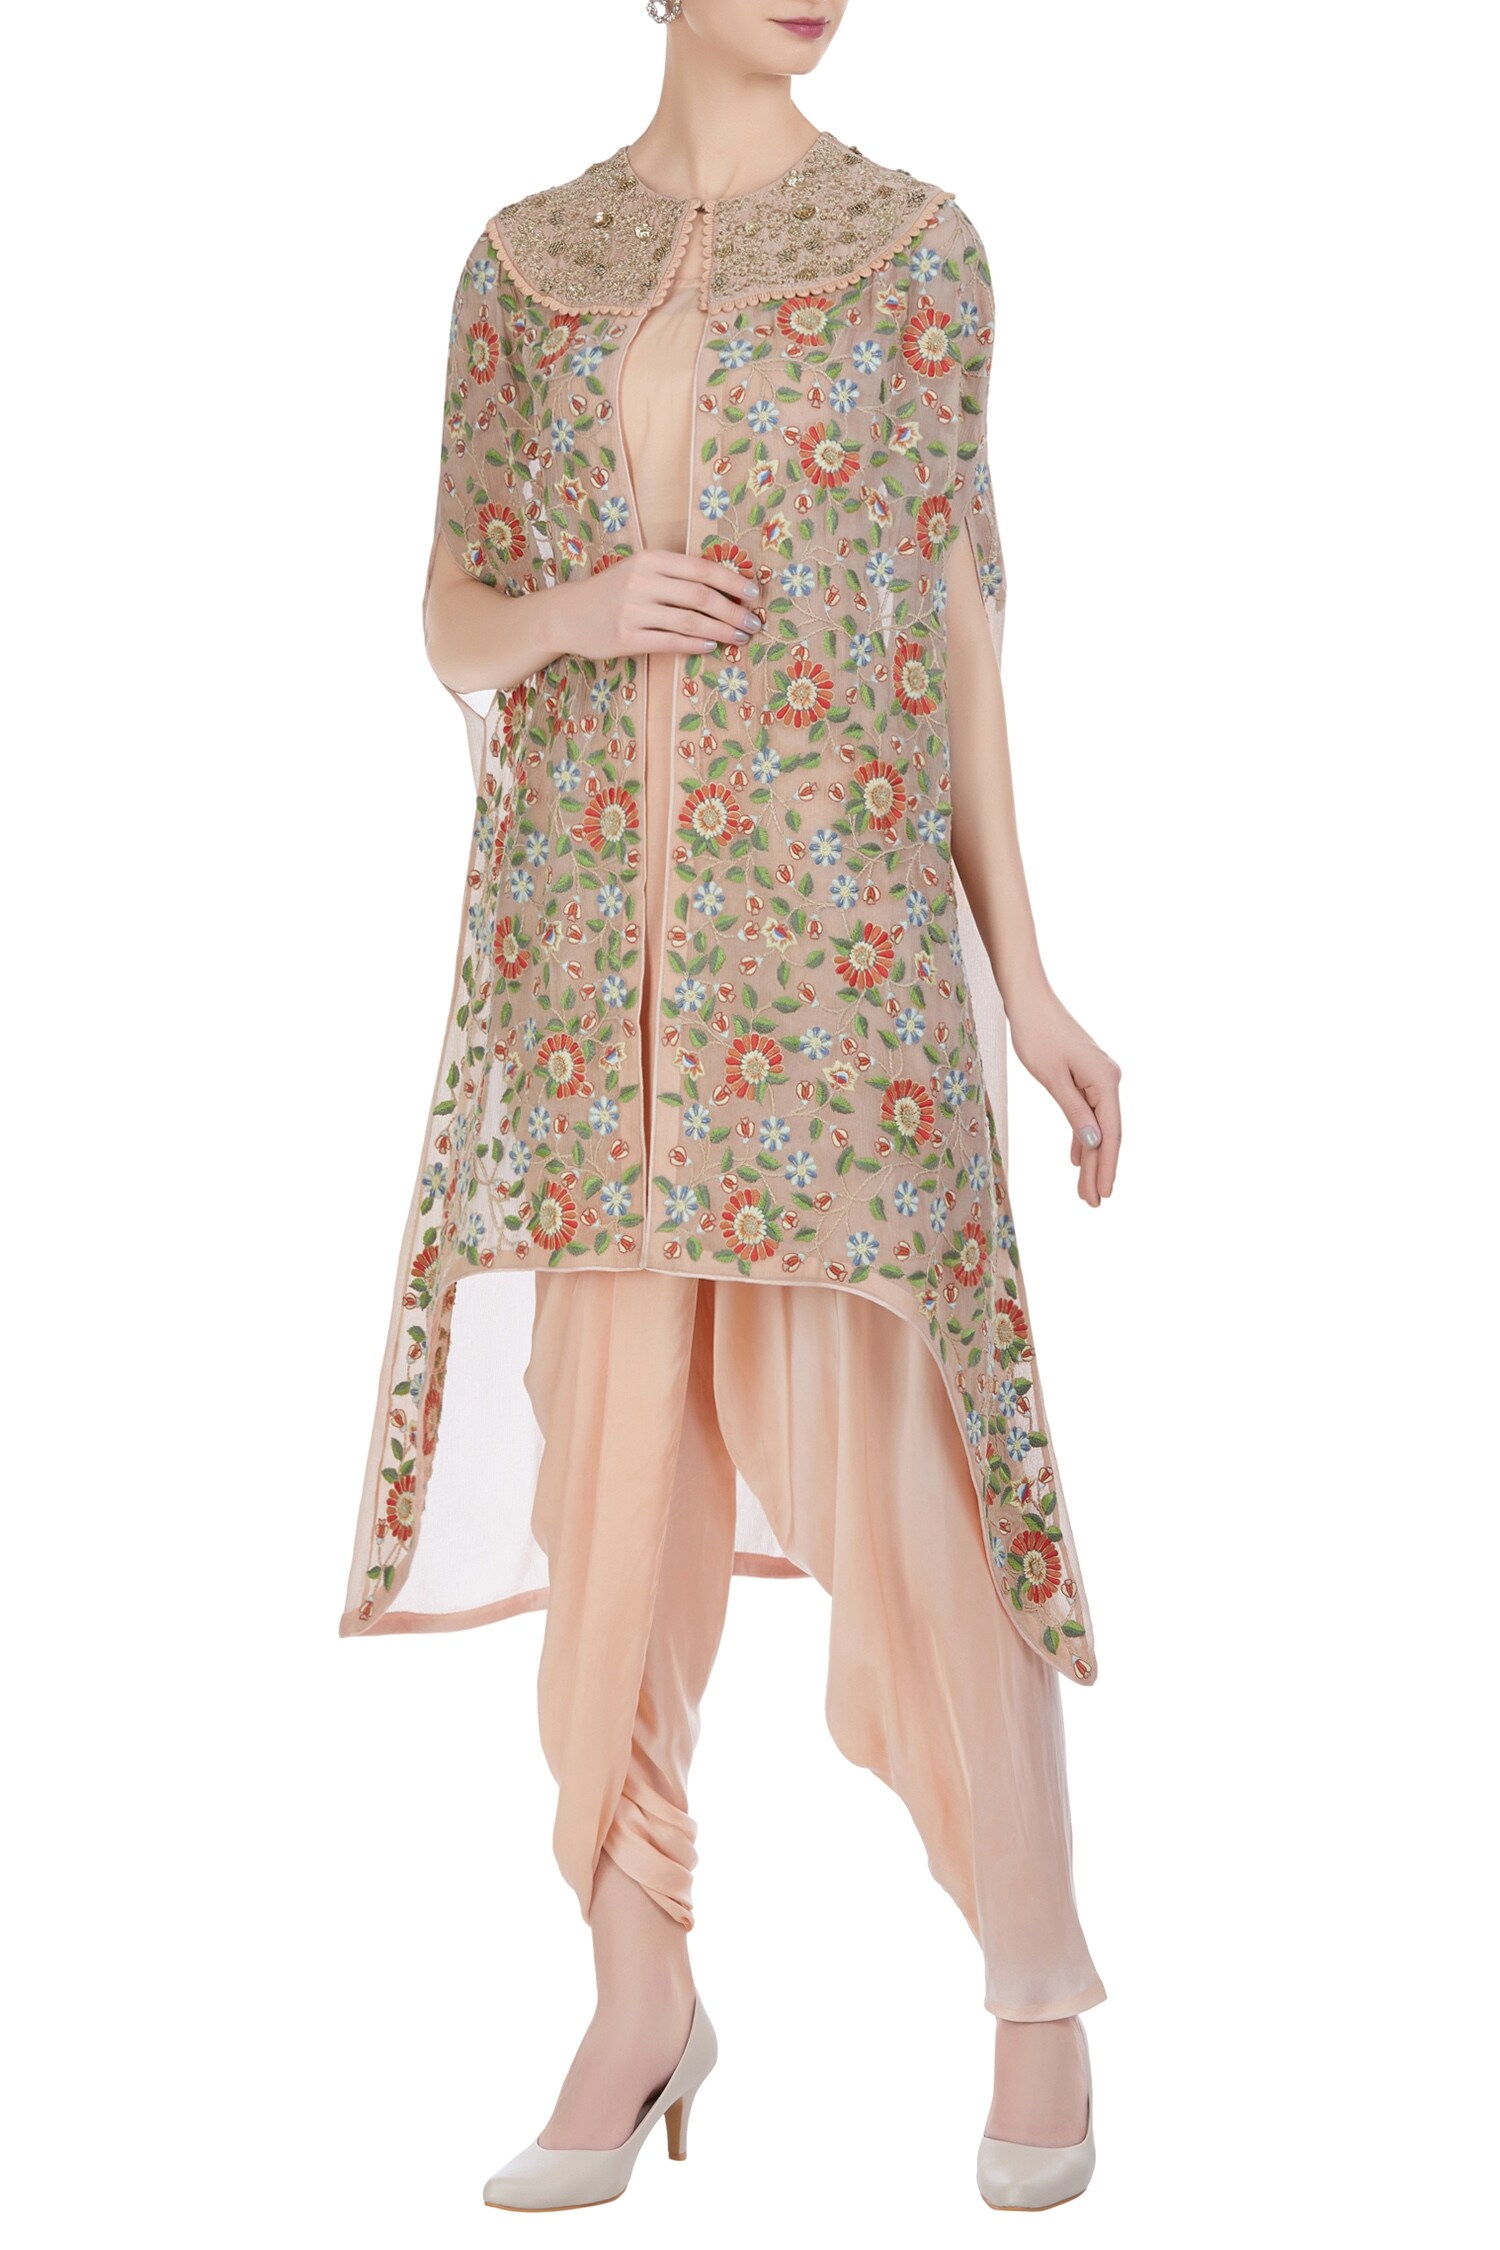 Petticoat Lane by Divya Peach Chiffon Silk Jacket: Open Embroidered And Kurta Set For Women